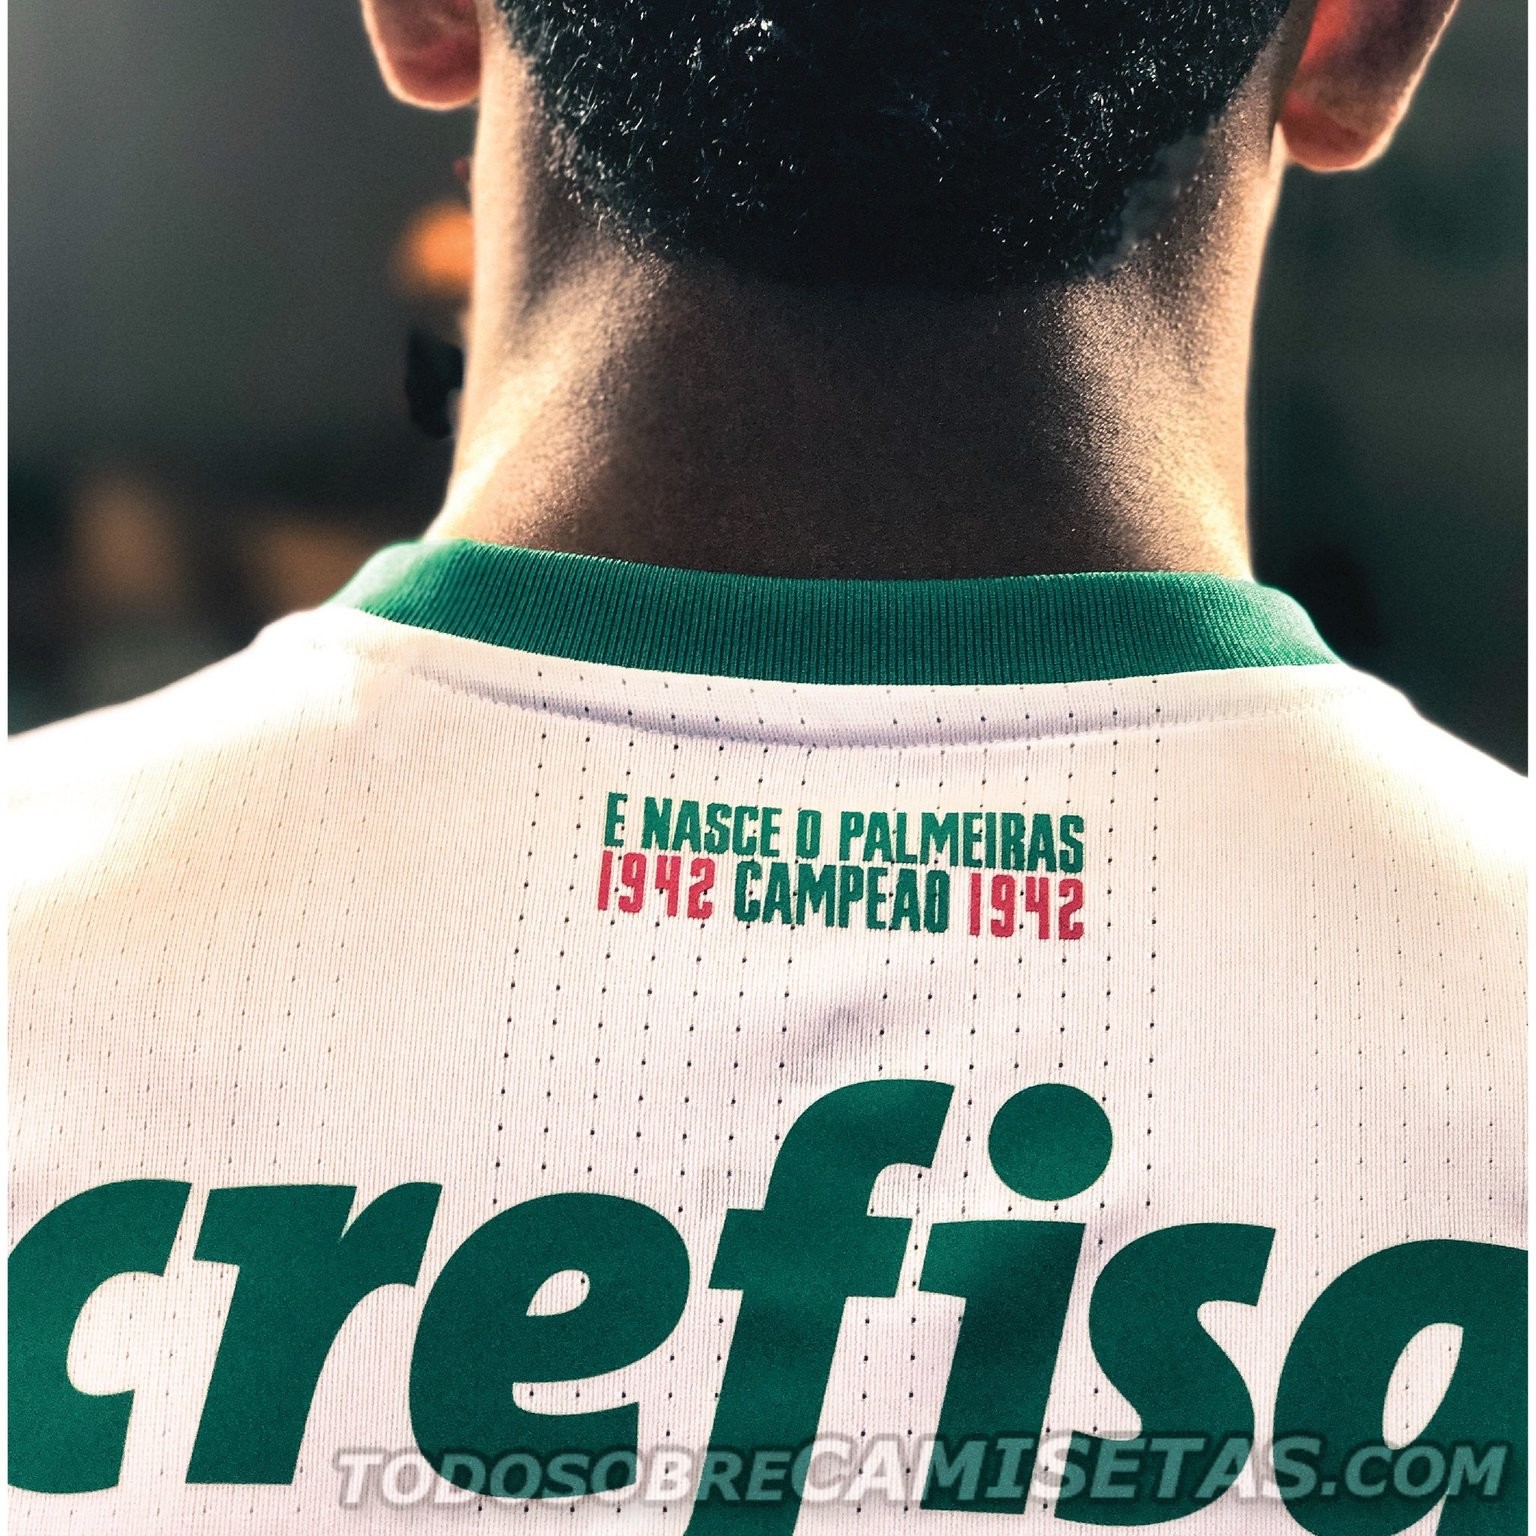 Camisa 2 adidas do Palmeiras 2017-18